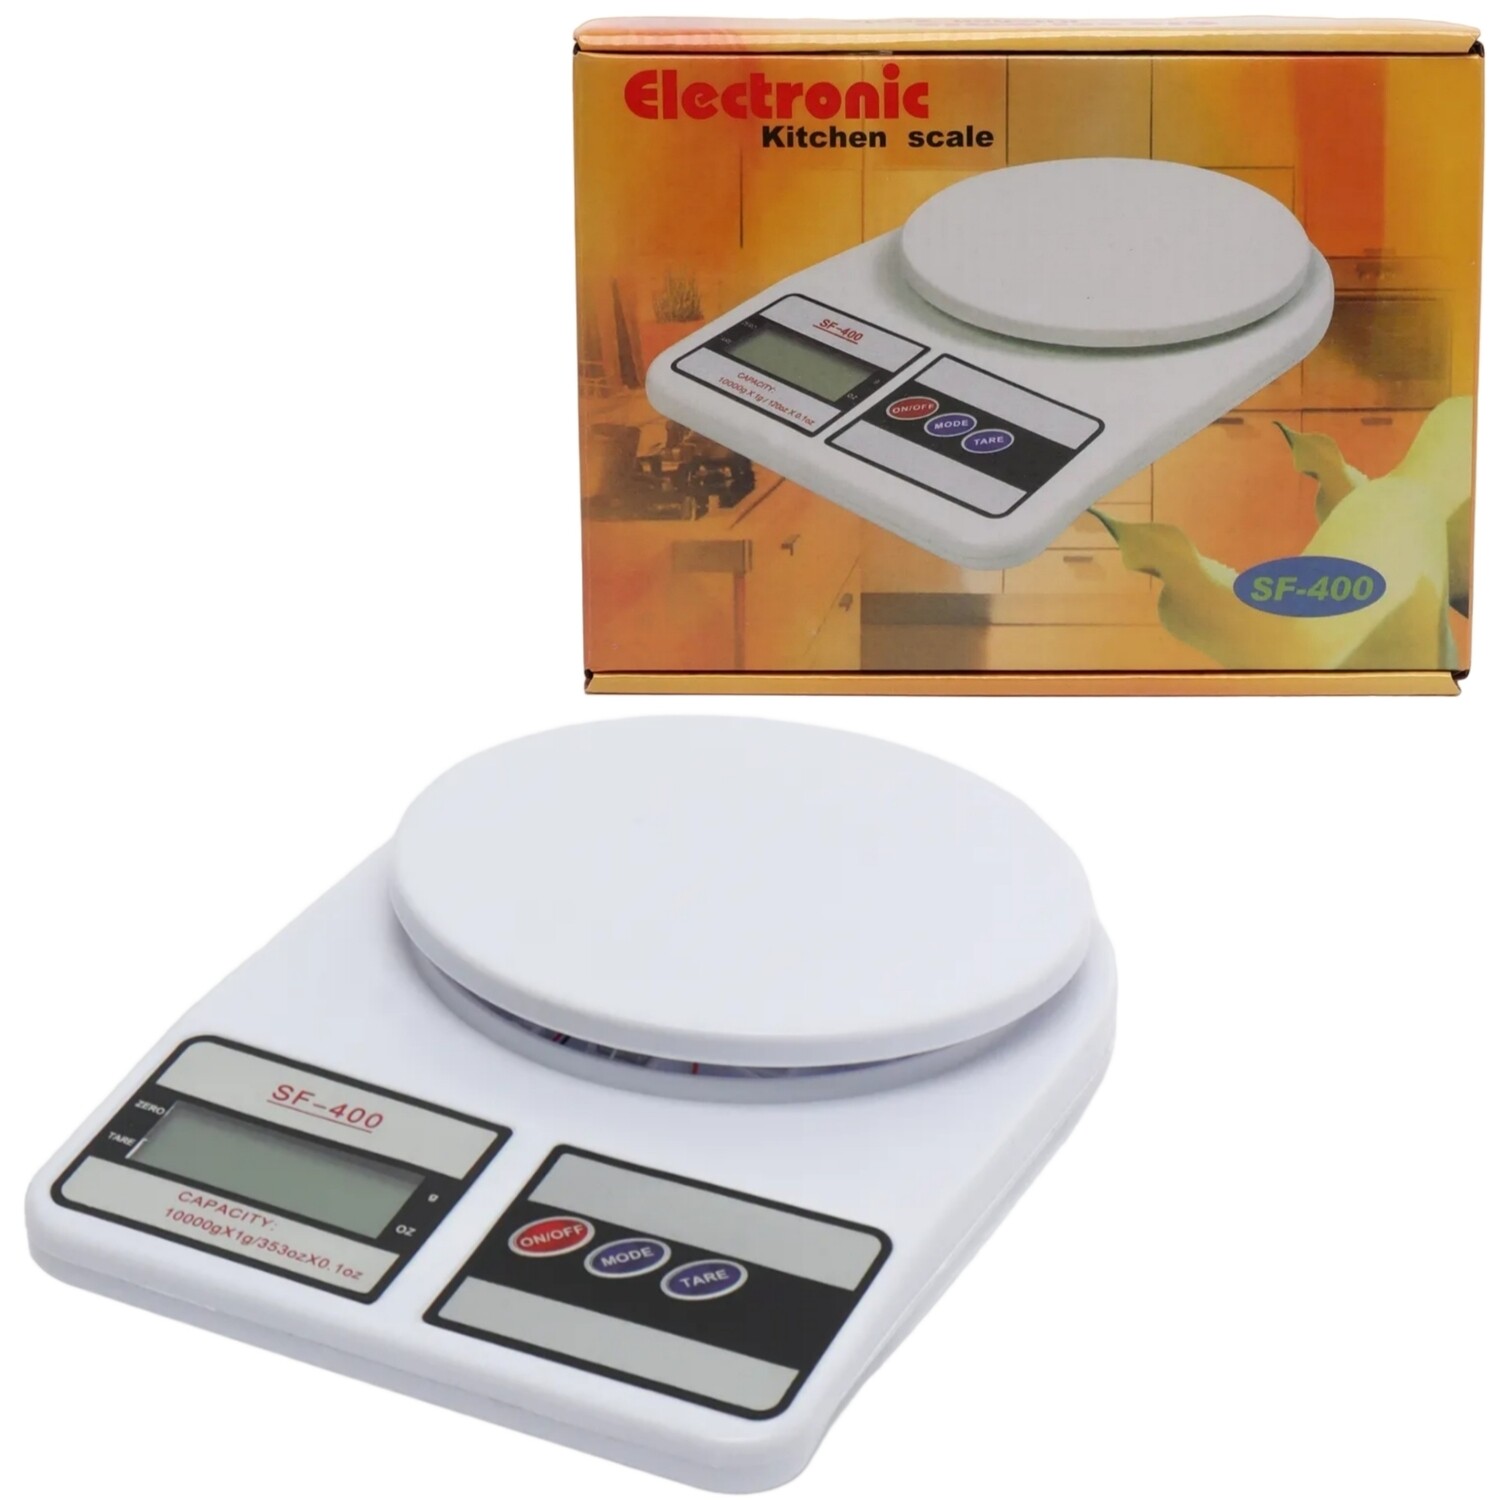 Электронные кухонные весы для взвешивания продуктов "Electronic Kitchen scale SF-400" до 7кг